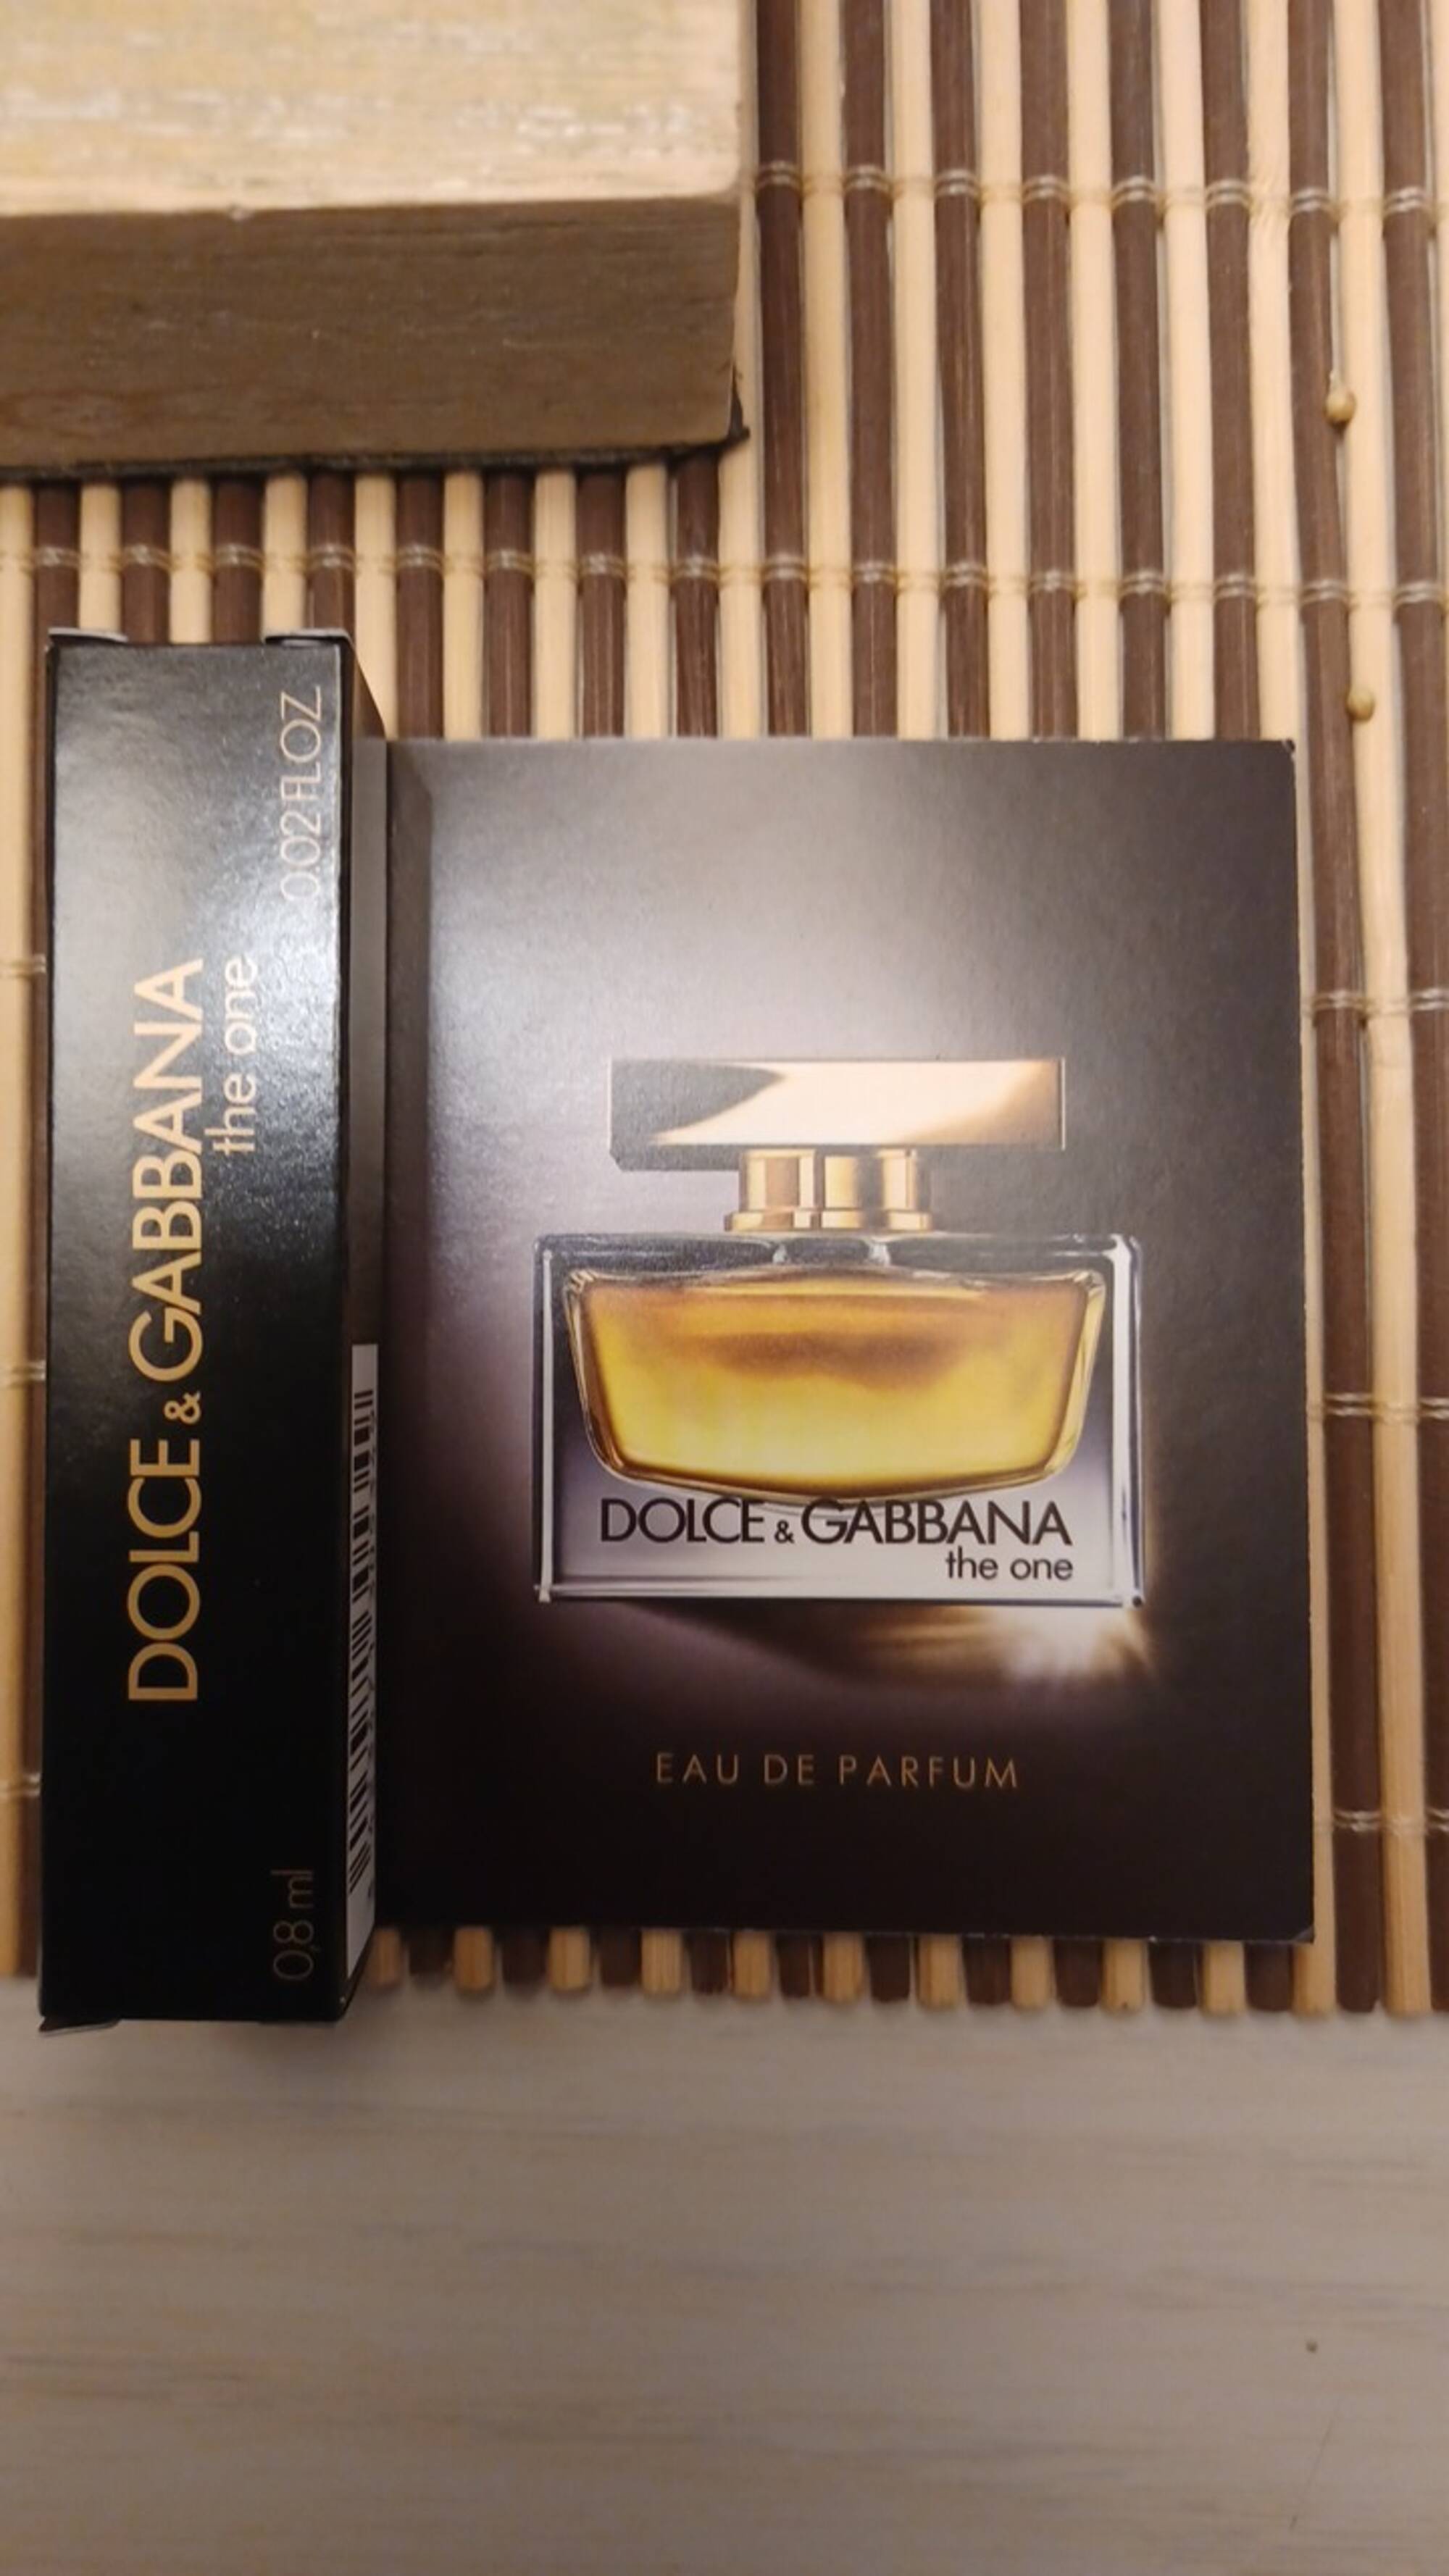 DOLCE & GABBANA - The one - Eau de parfum